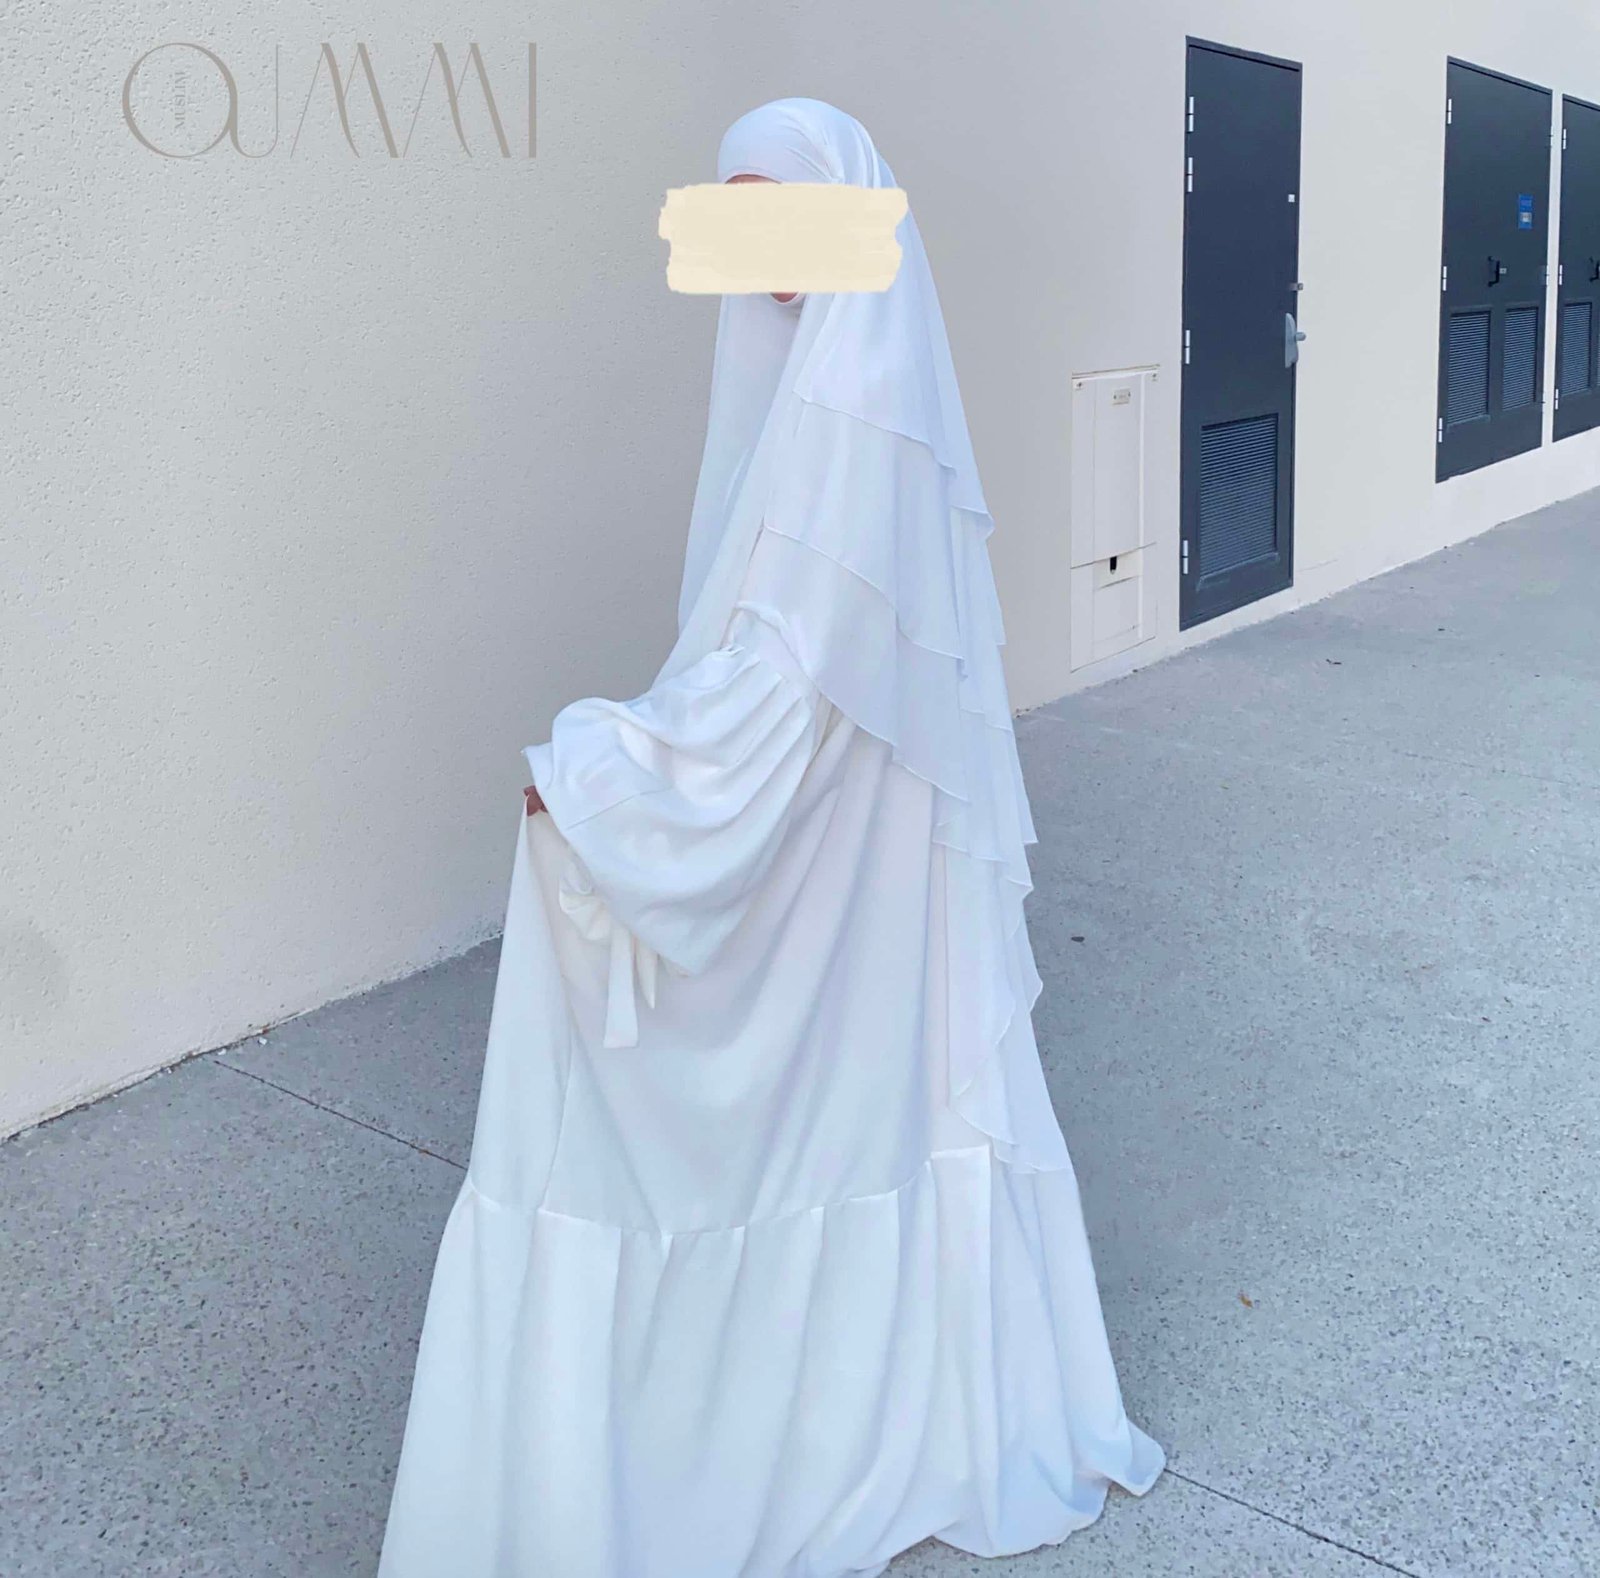 Robe abaya de mariée pour femme musulmanes, robe de princesse femme voilées avec manches bouffantes à bretelles et coupe extra large, portée avec un hijab façon khimar 3 voiles. Robe femme Aid, magnifique tenue pour l'Eid. Style abaya saoudienne